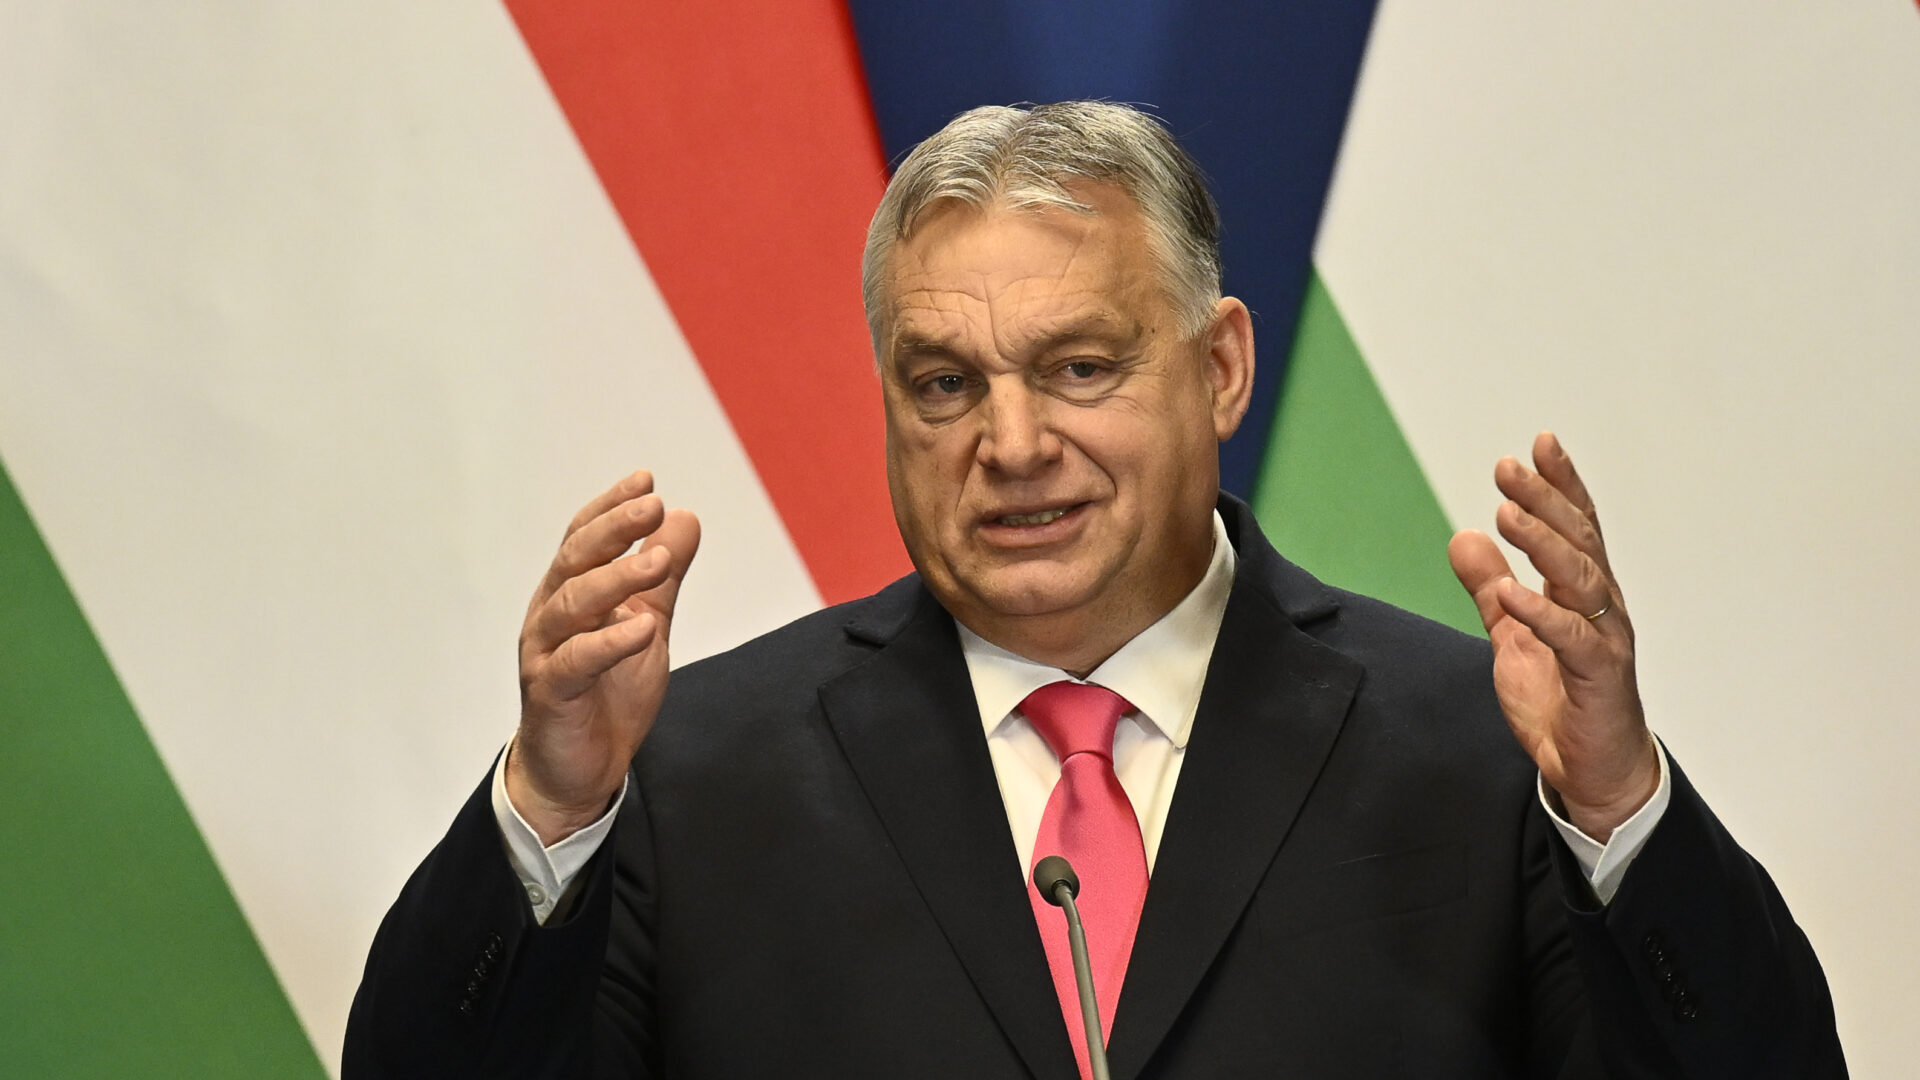 Β.Όρμπαν: «Το ουγγρικό κοινοβούλιο θα επικυρώσει σήμερα την ένταξη της Σουηδίας στο ΝΑΤΟ»